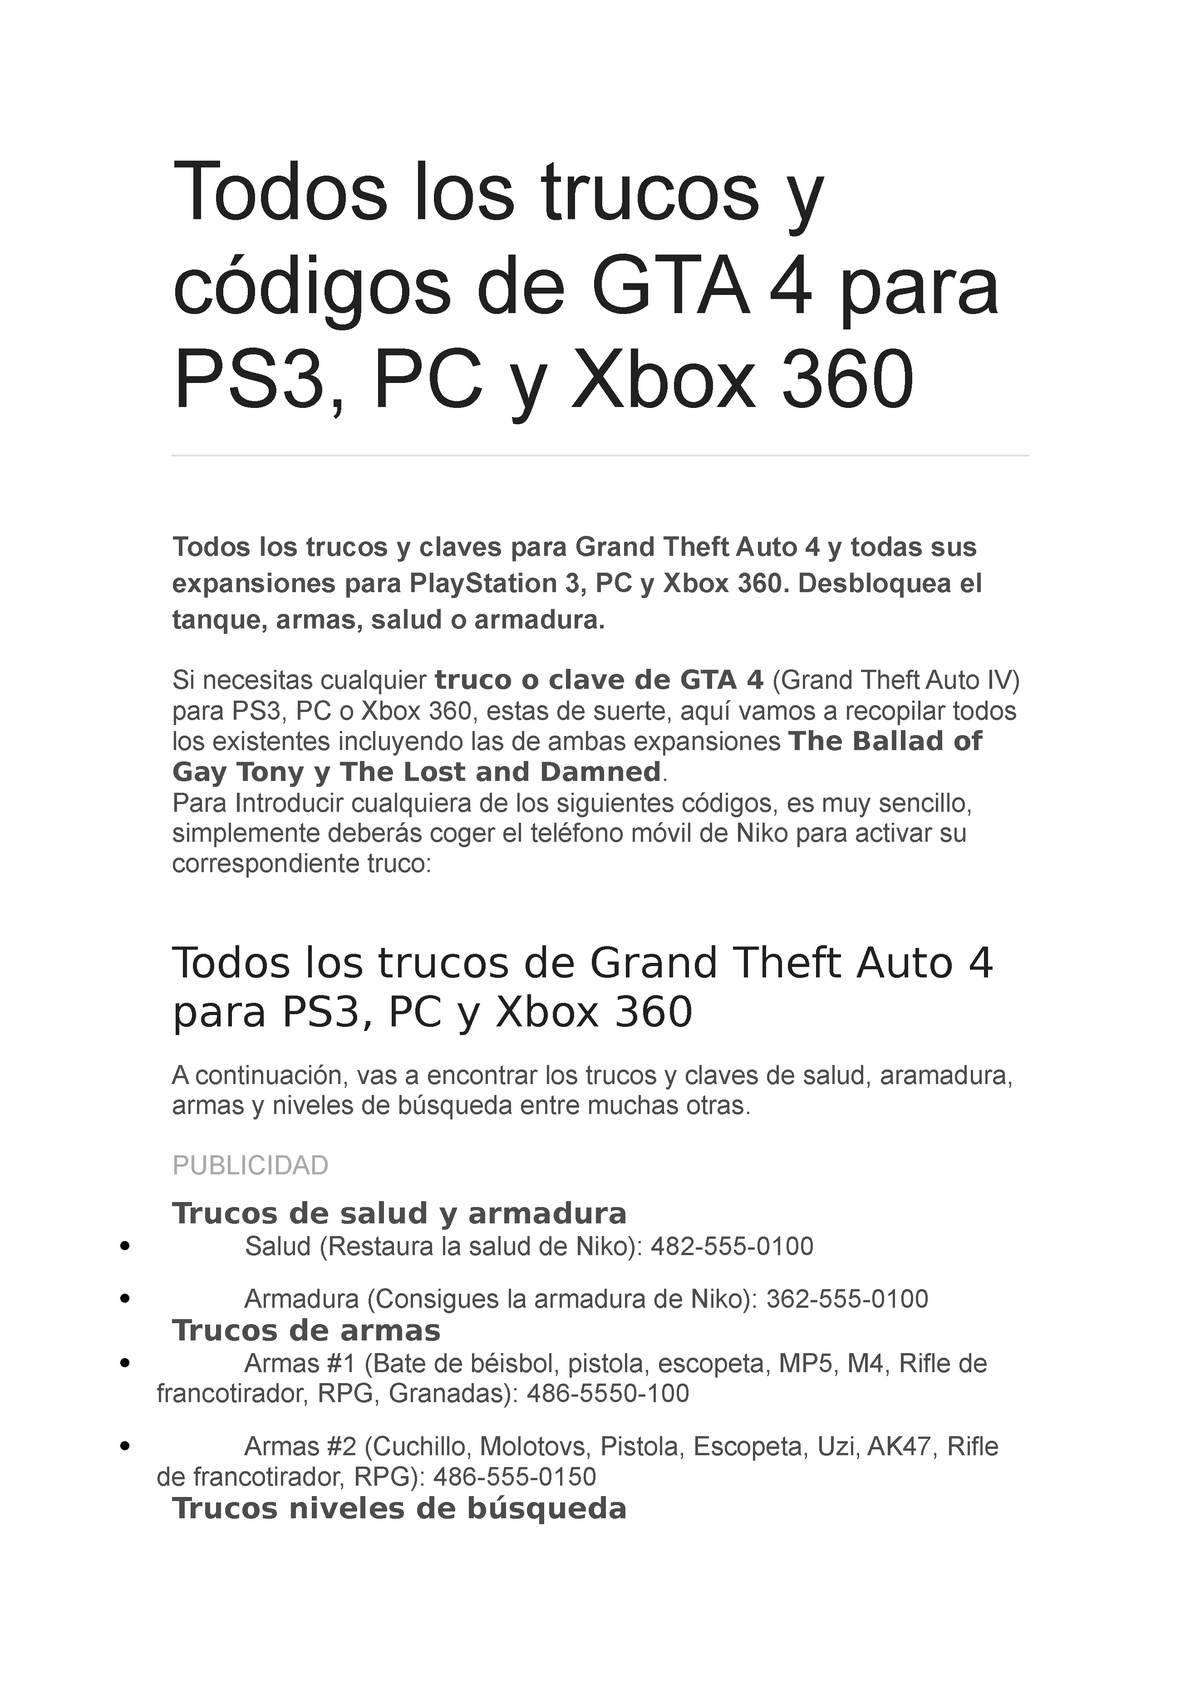 Vuelo Proponer dividir Trucos gta 4 - xdxxxxdddddd - Todos los trucos y códigos de GTA 4 para PS3,  PC y Xbox 360 Todos los - Studocu